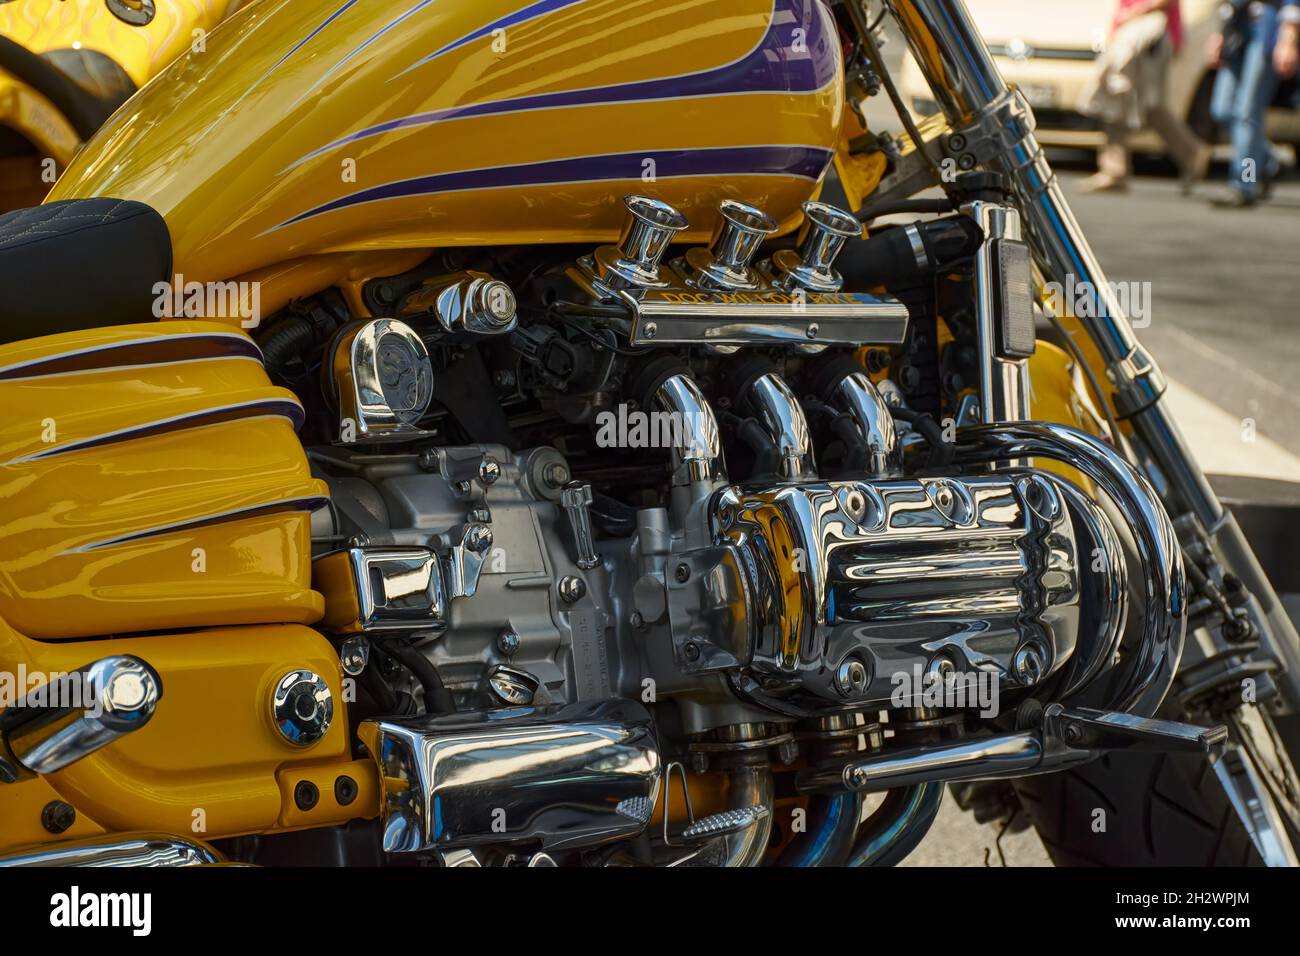 Vue détaillée d'une moto, d'une Honda Valkyrie reconstruite (Doc Willow Bike) en jaune vif et de nombreuses pièces chromées. Banque D'Images